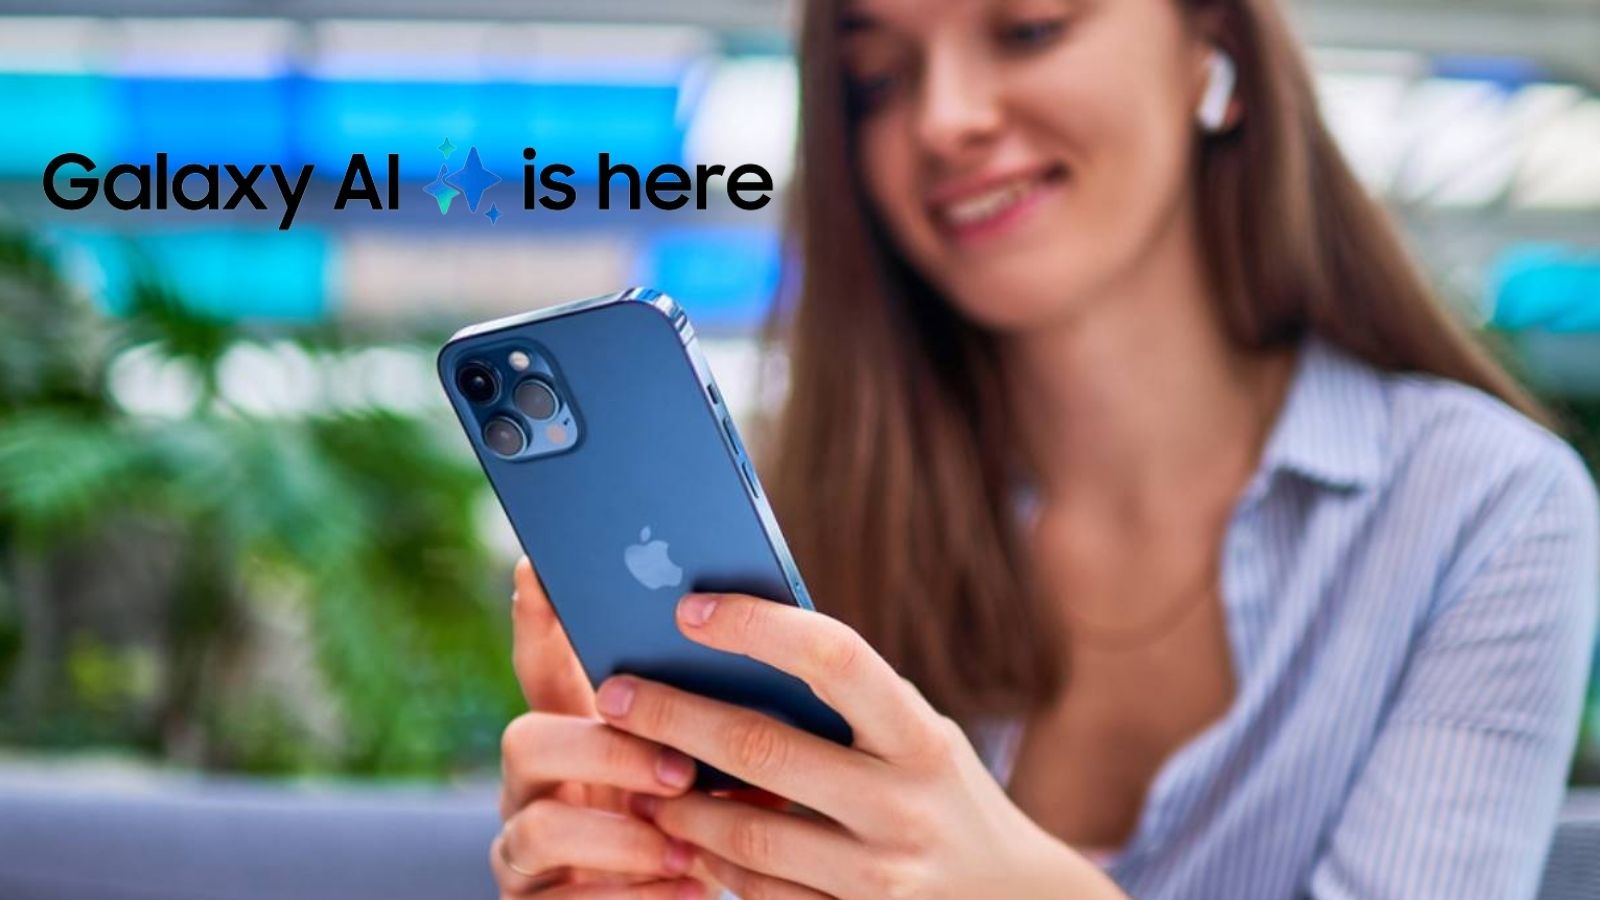 La Samsung Galaxy AI debutta su iPhone: ecco come accedervi